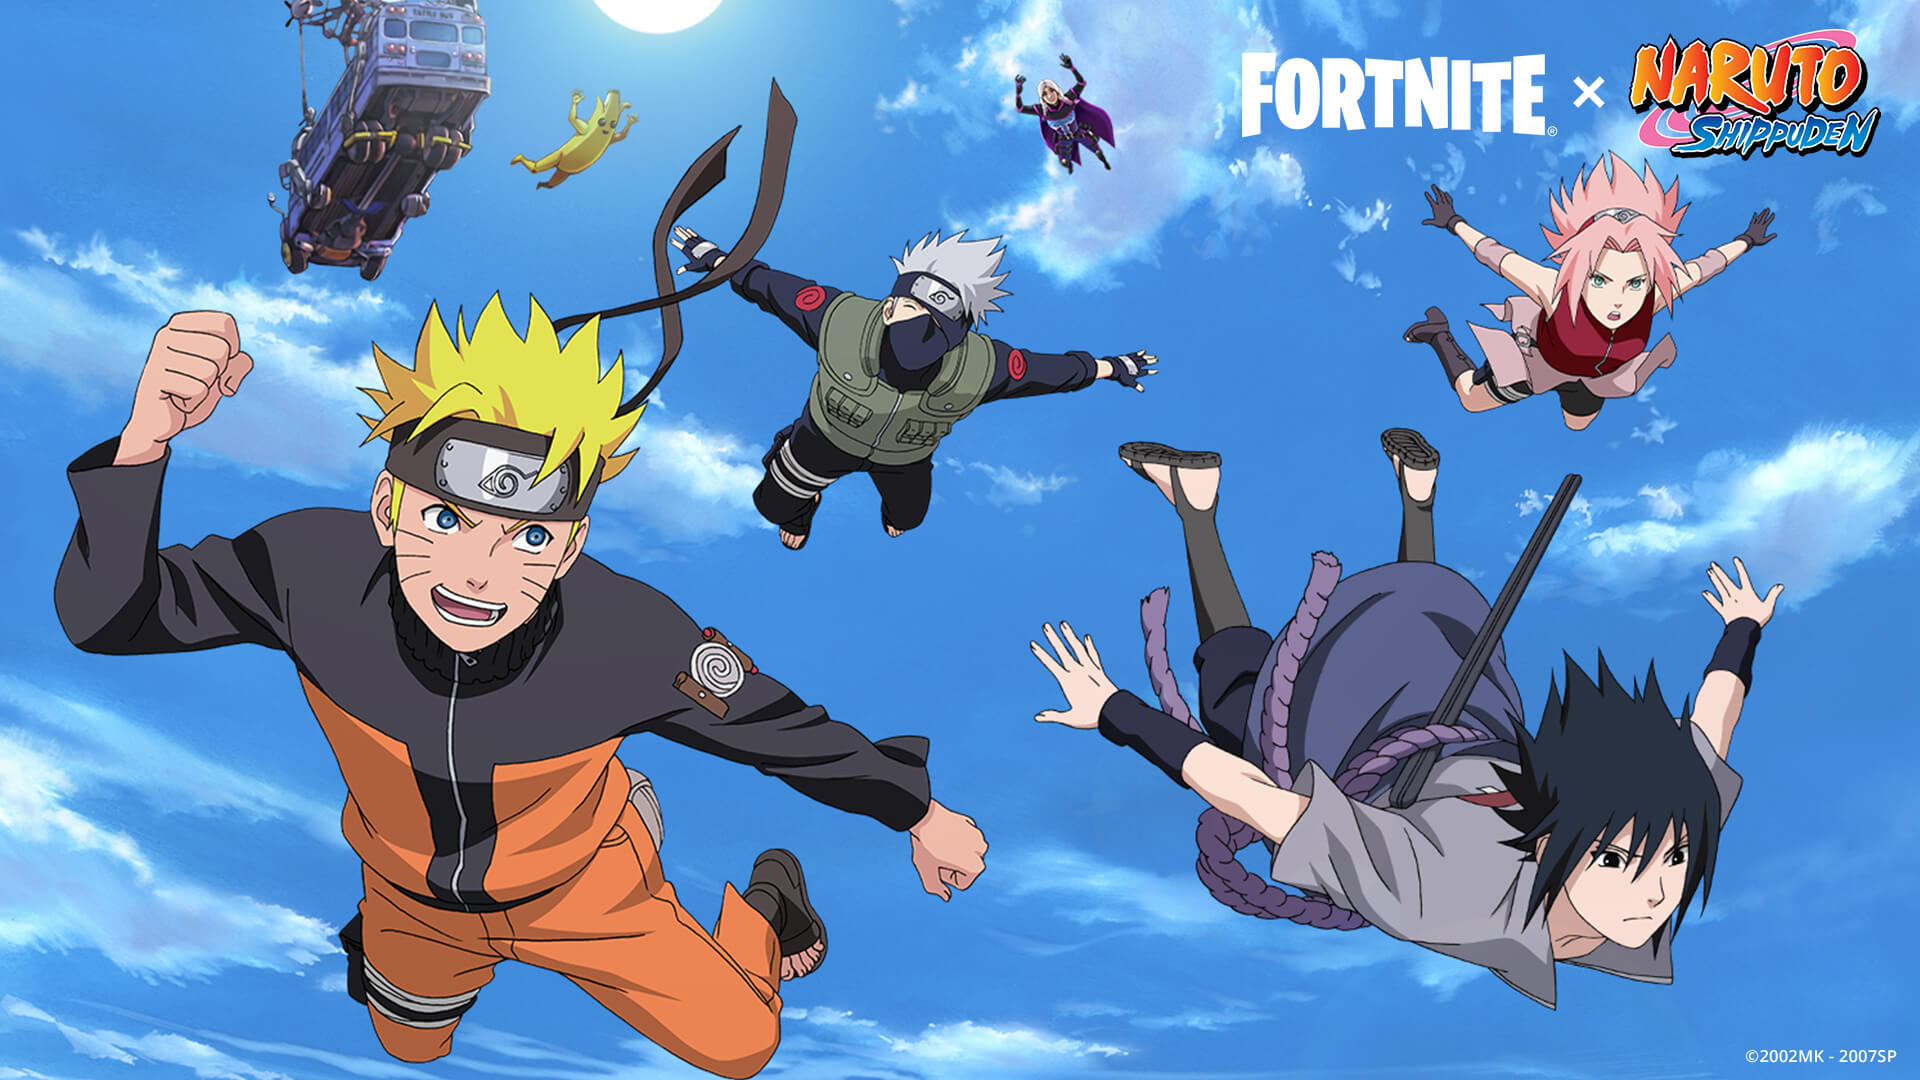 Fortnite Naruto Shinobi Teamwork Loading Screen En 1920x1080 A344ea57a6a6 1